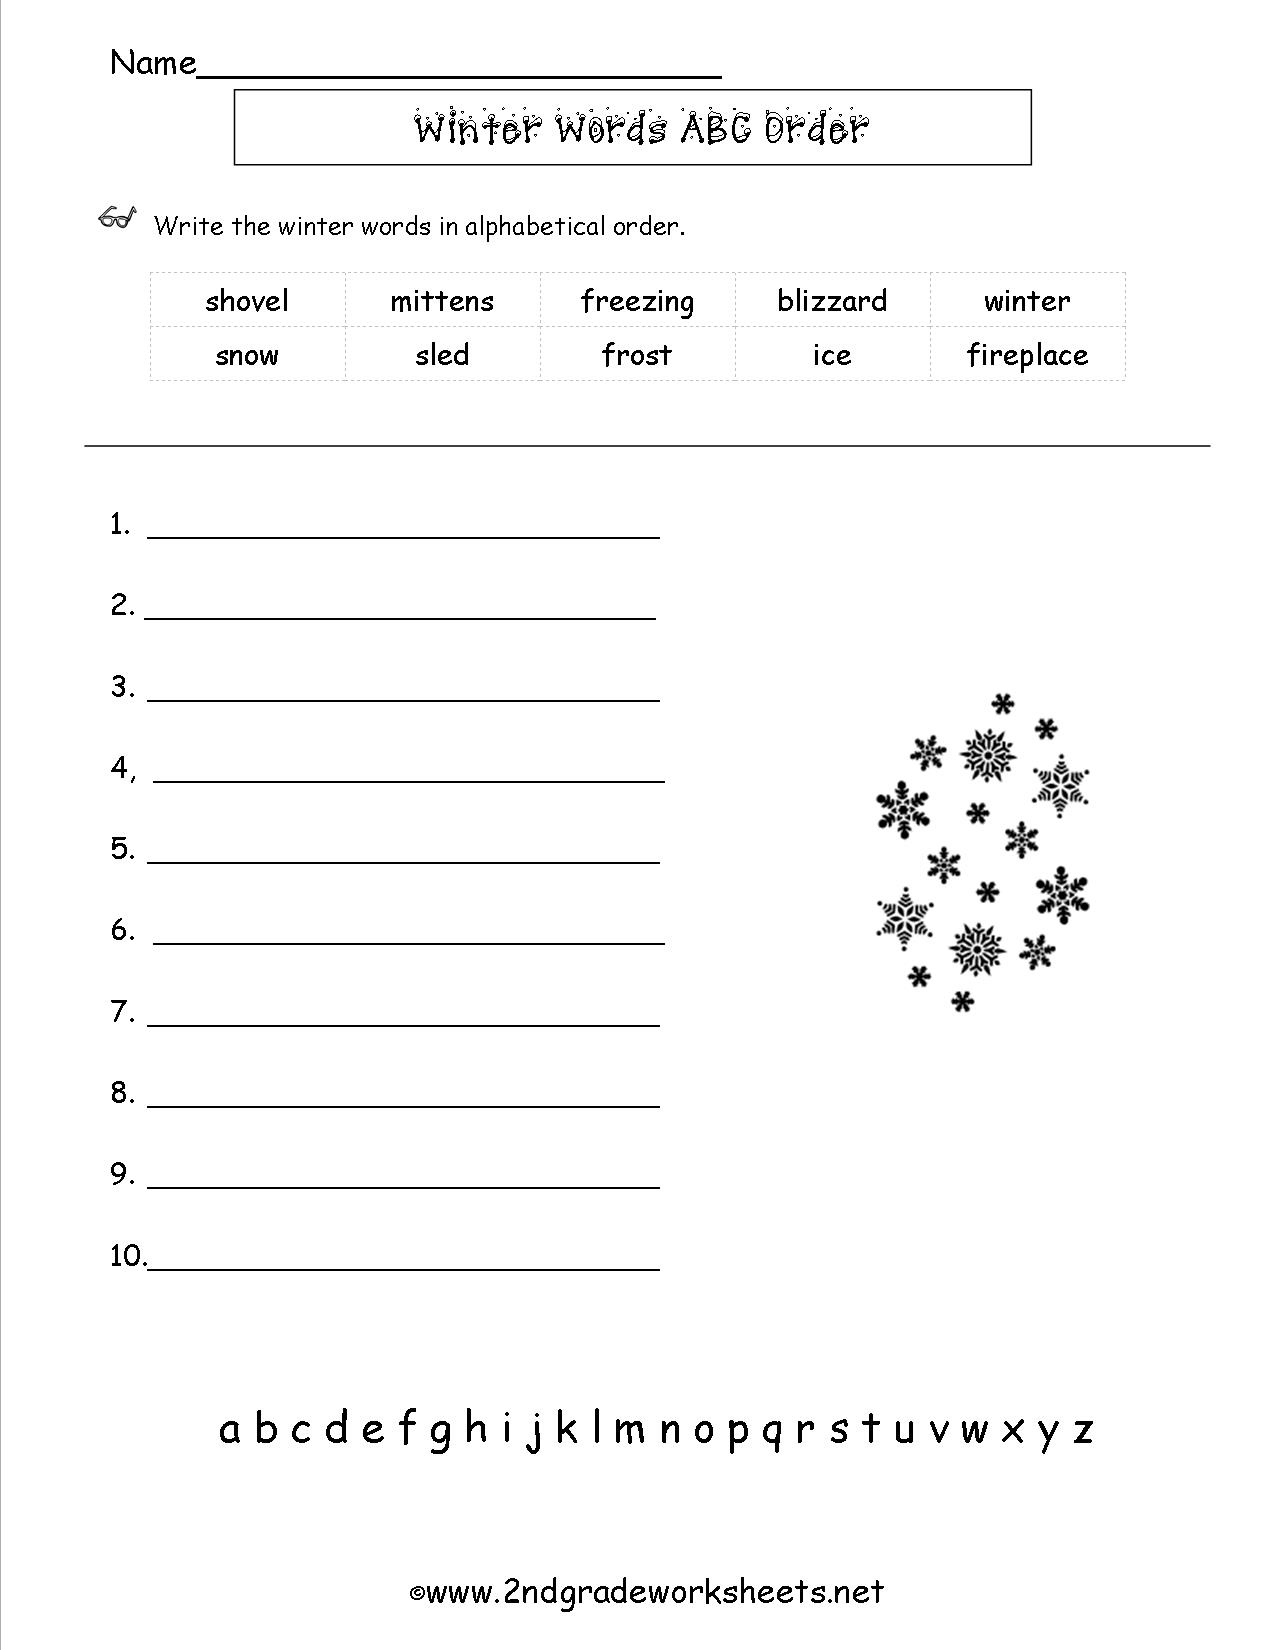 14-abc-order-letters-worksheets-worksheeto